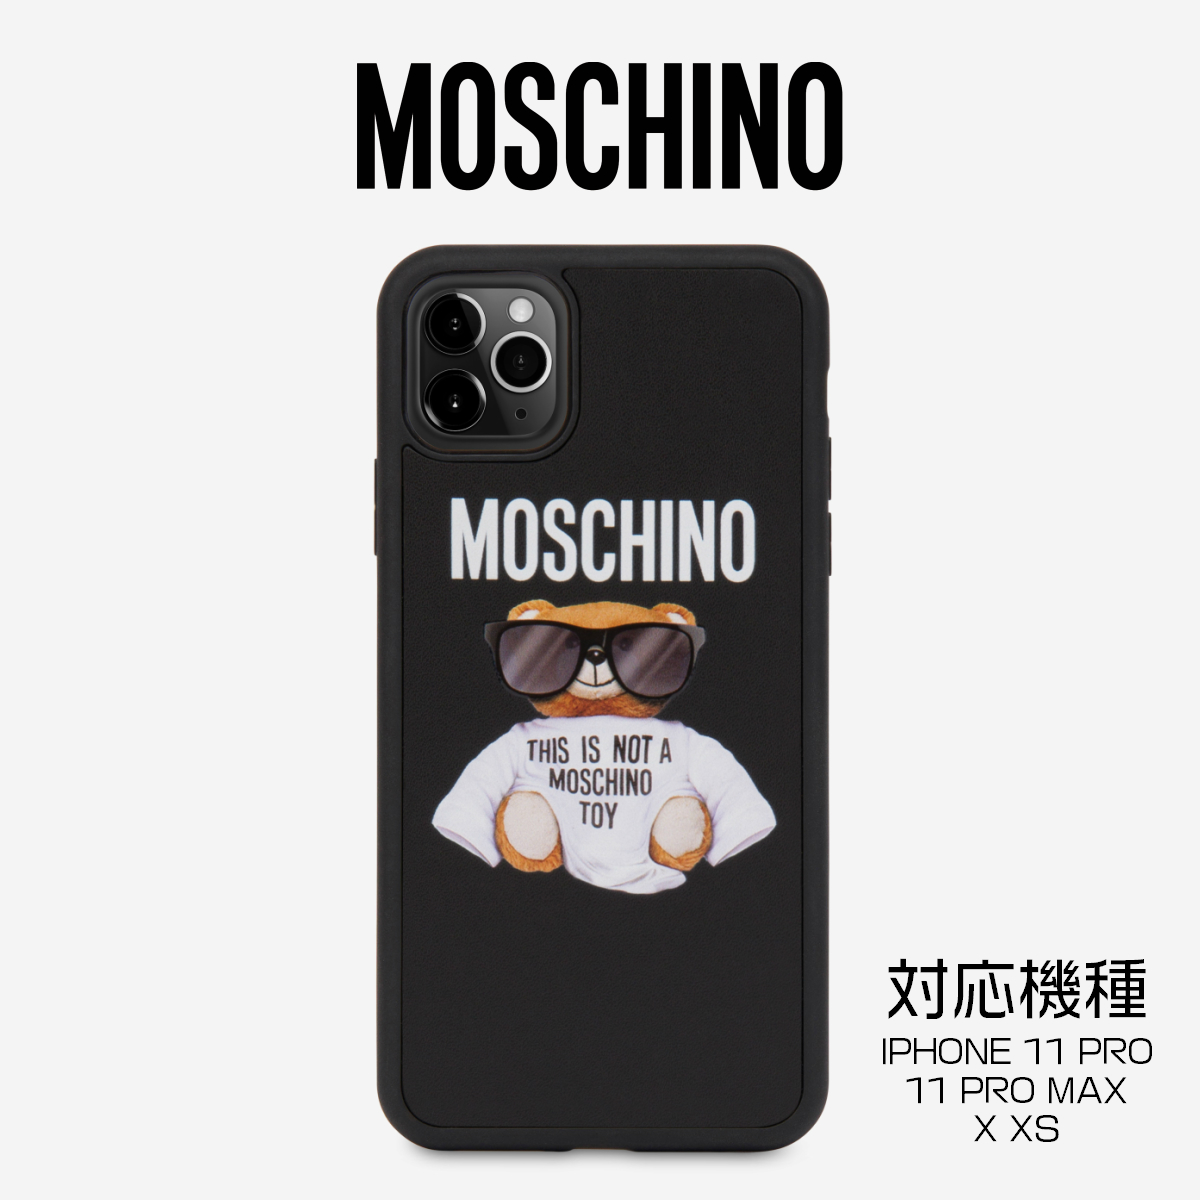 新発売の ◇テディベア モスキーノ 【関税込】MOSCHINO iPhone MAX Pro 11 iPhone・スマホケース  サイズを選択してください:IPHONE11PROMAX